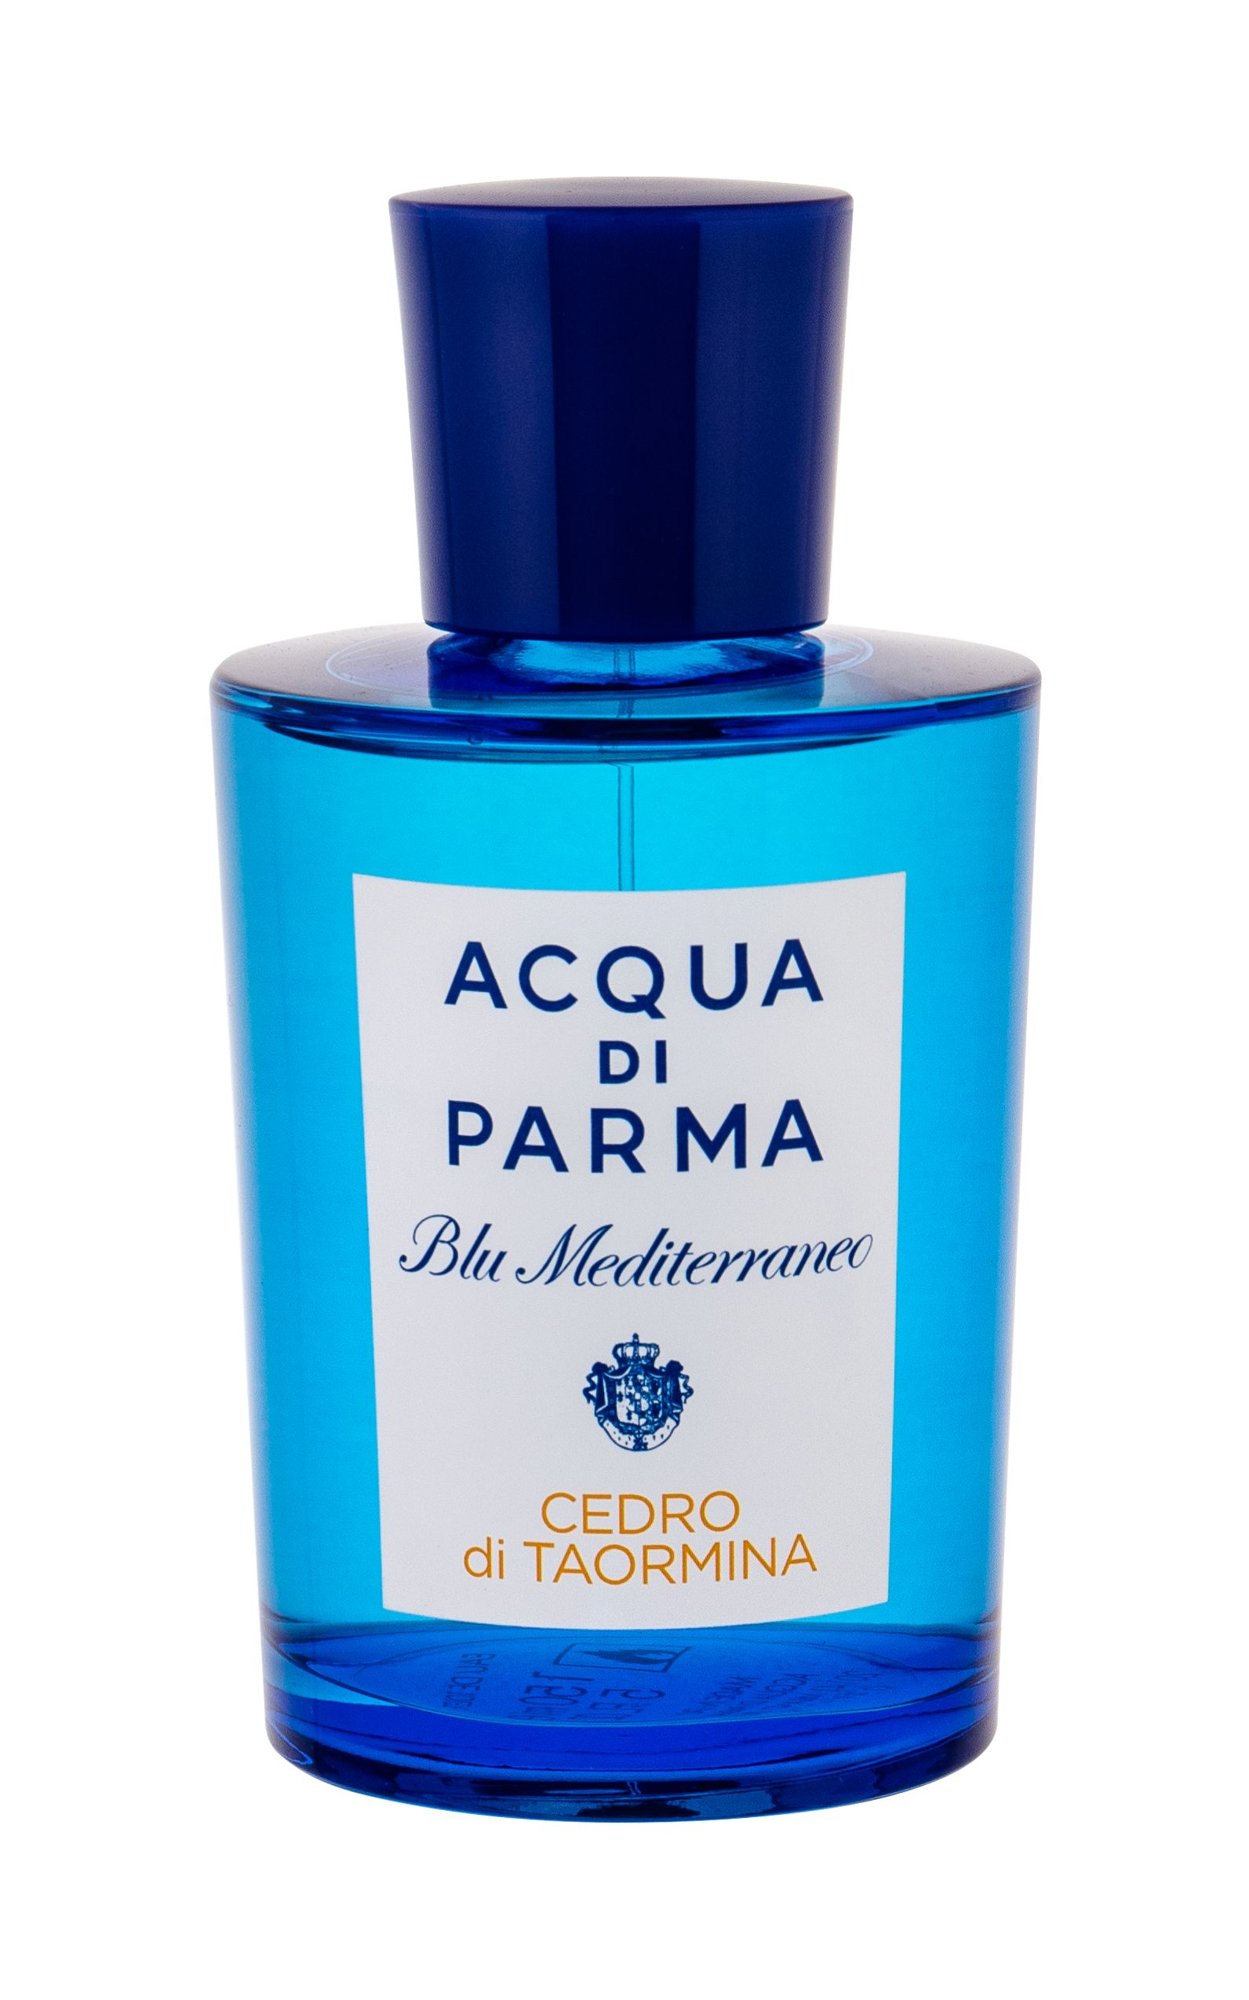 Acqua di Parma Blu Mediterraneo Cedro di Taormina